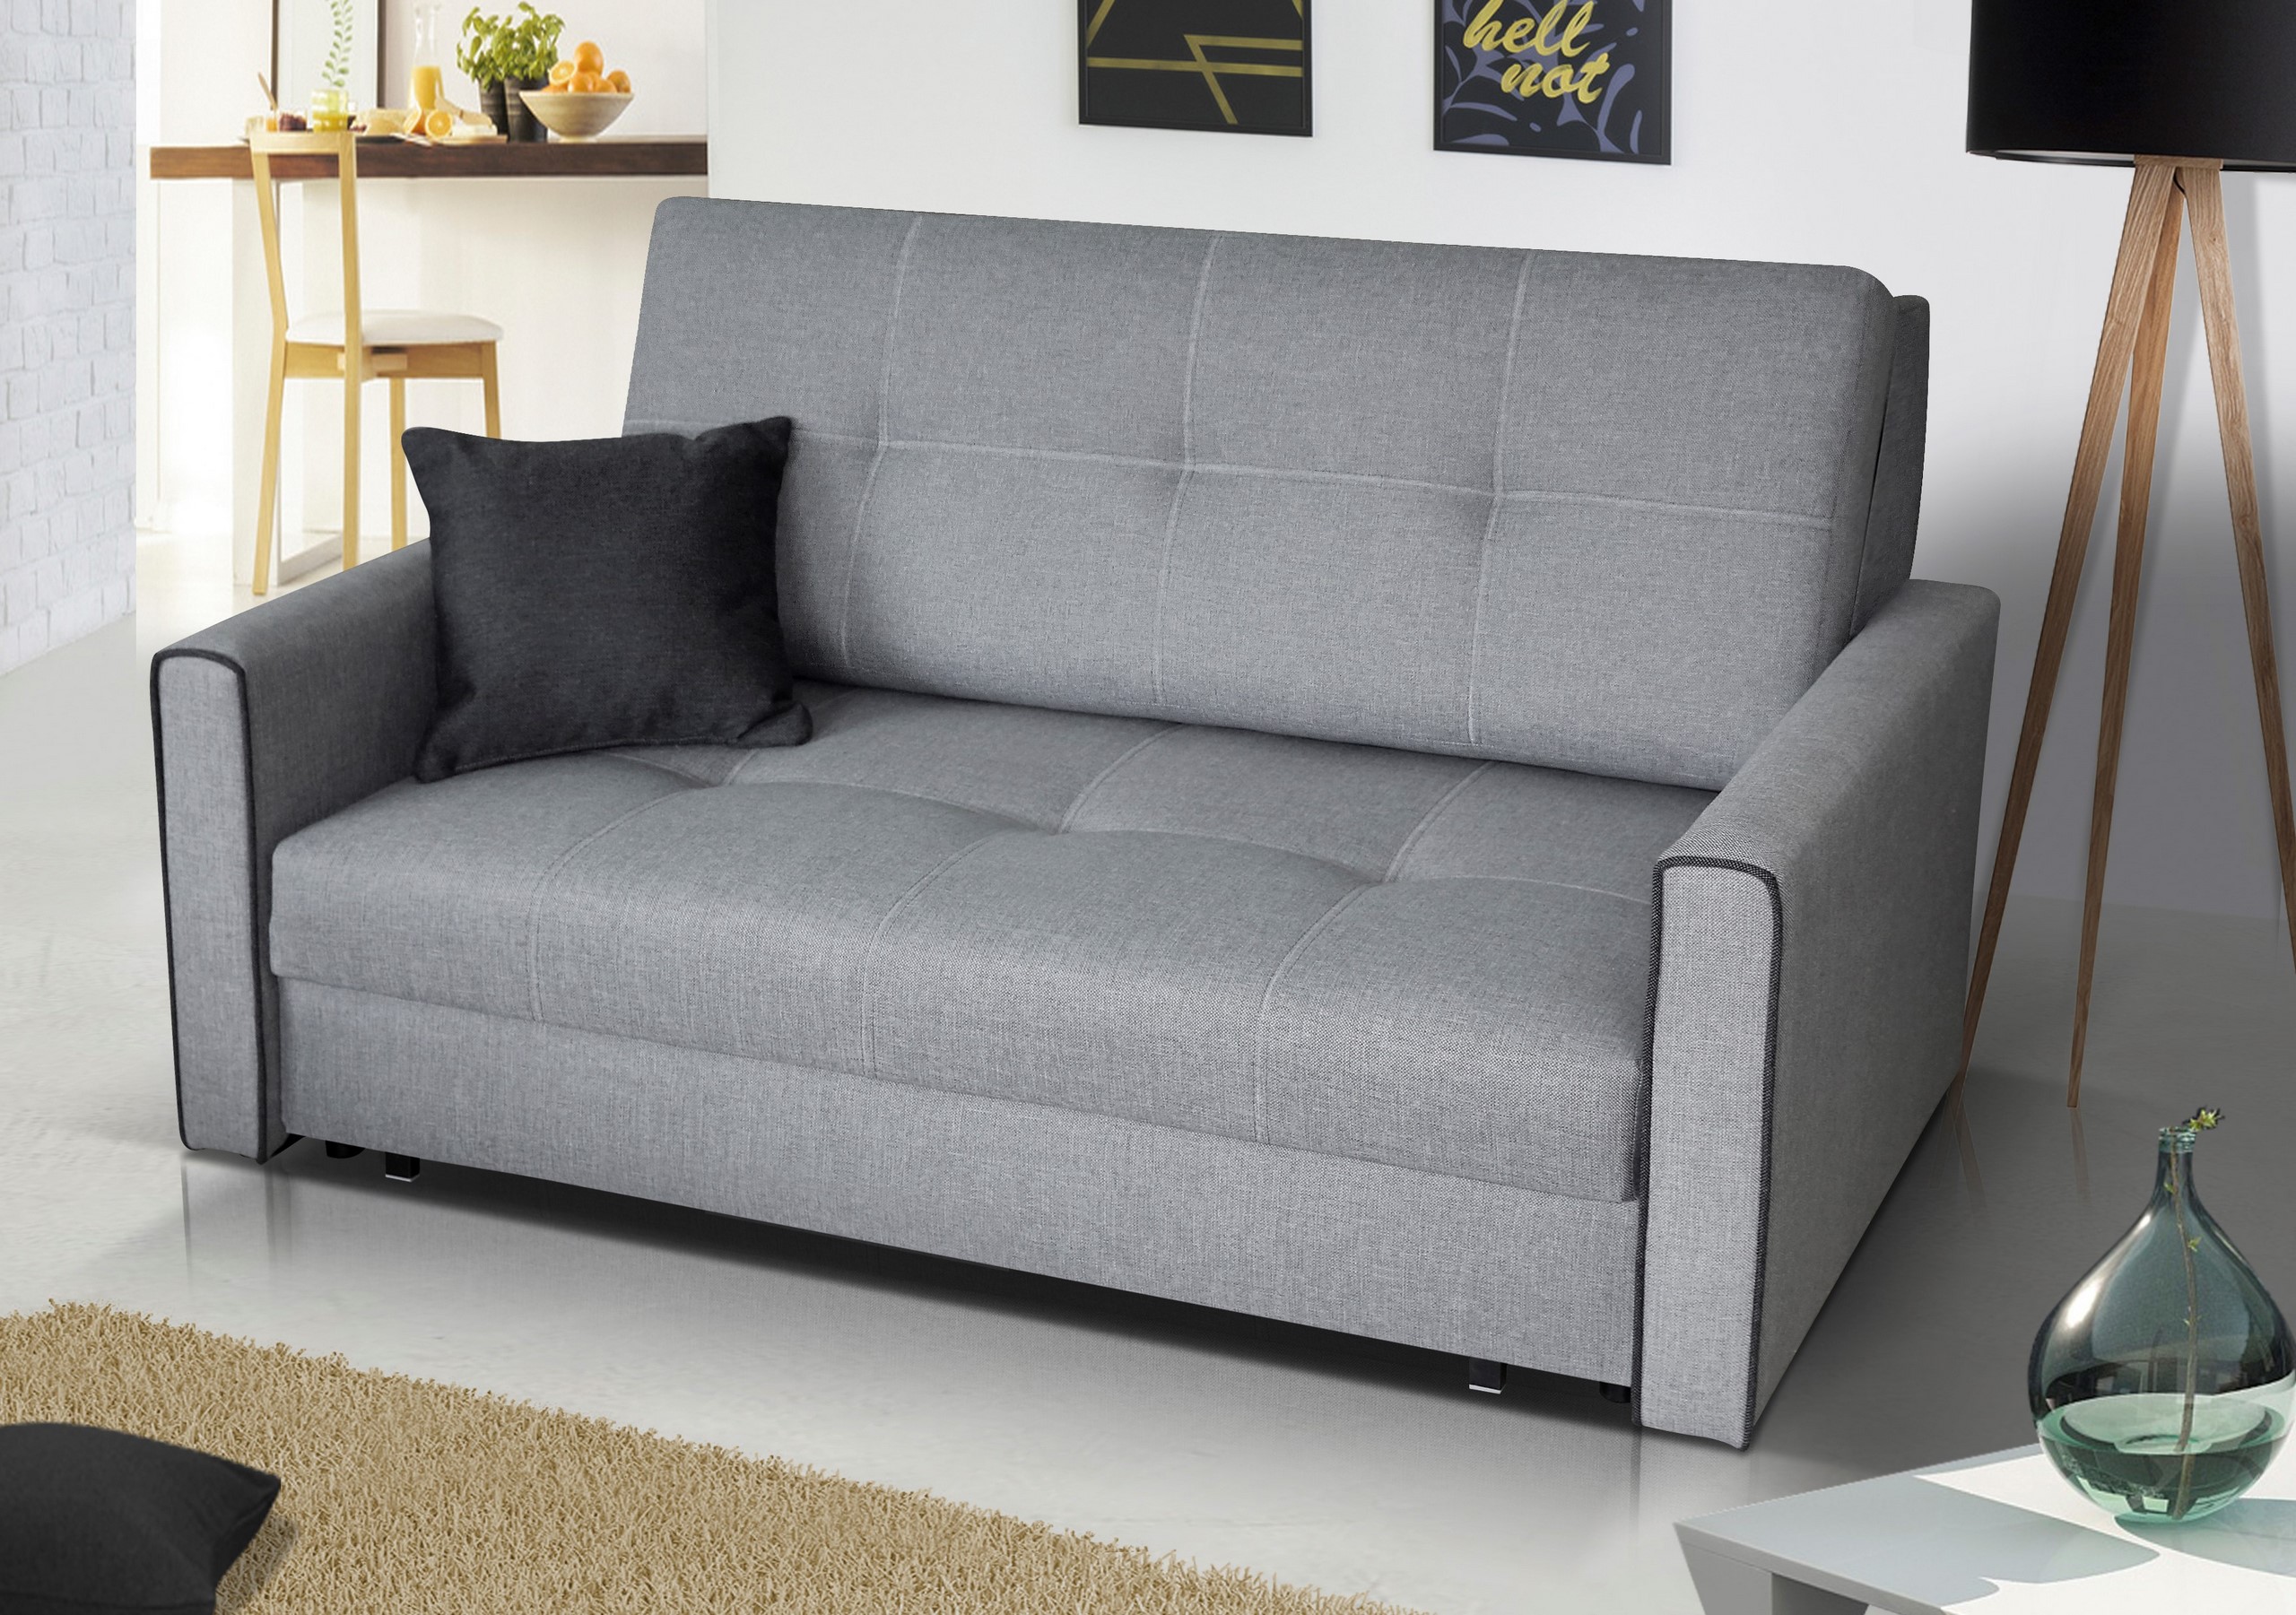 Mediate Join set VIVA II wygodna sofa spanie sprężyny łóżko kanapa - 1019 zł - Allegro.pl -  Raty 0%, Darmowa dostawa ze Smart! - Wieruszów - Stan: nowy - ID oferty:  7430356568